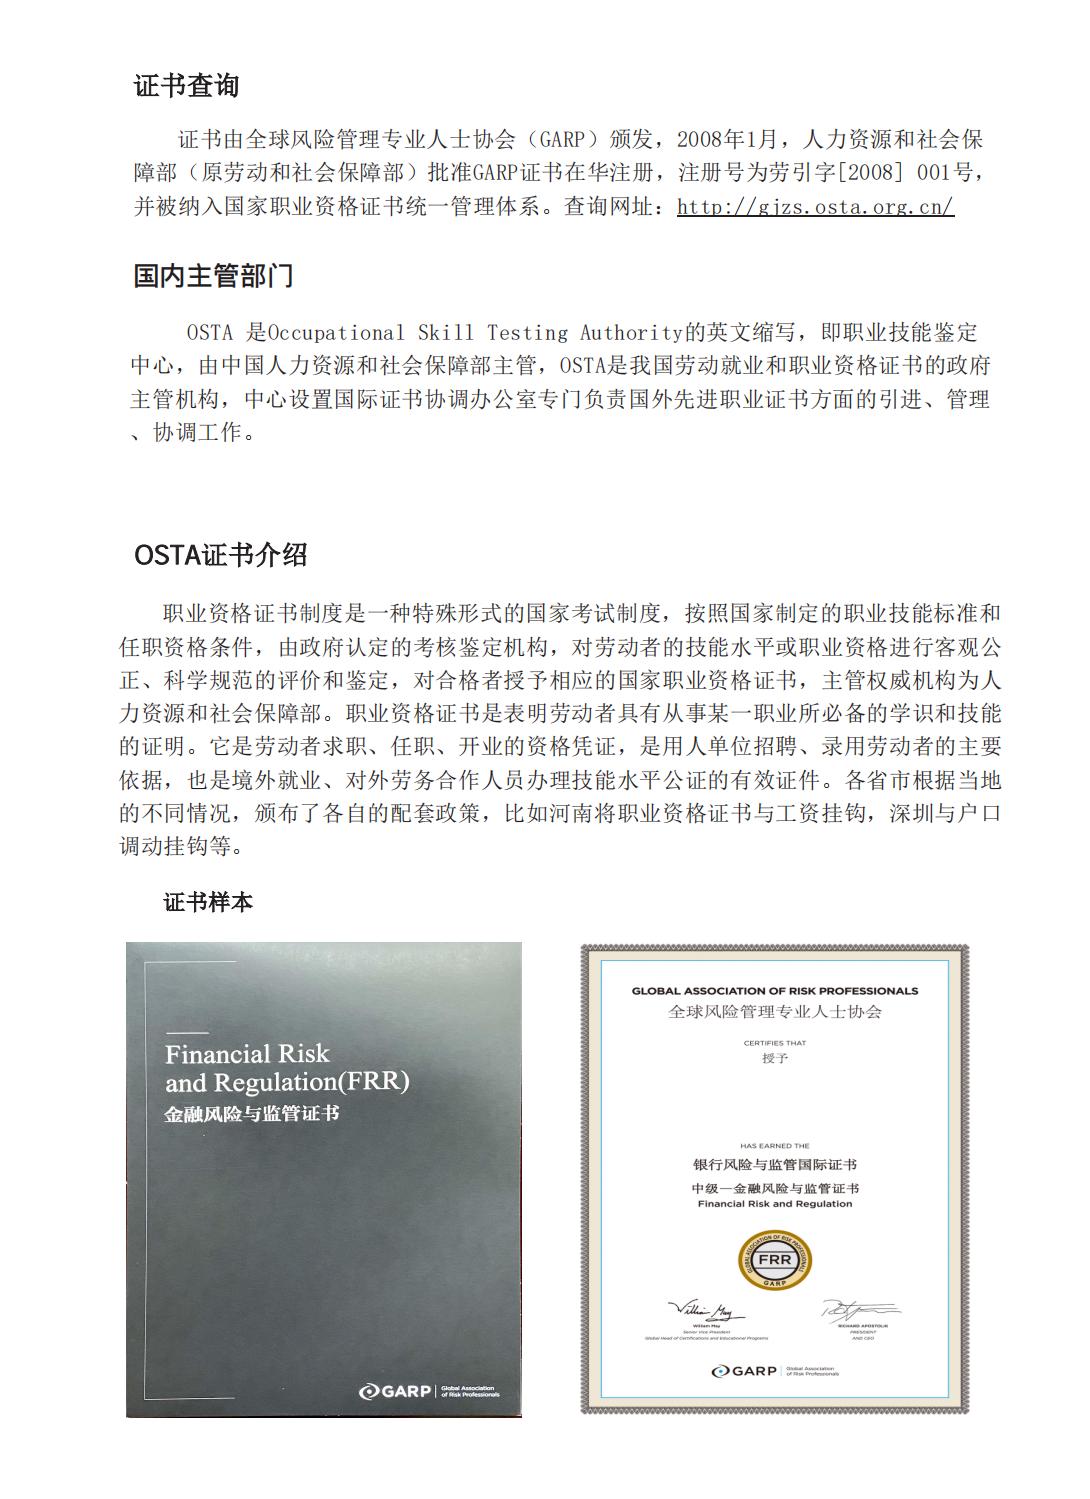 甘肃金昌金融风险与监管证书FRR报名考试培训机构北京启信教育